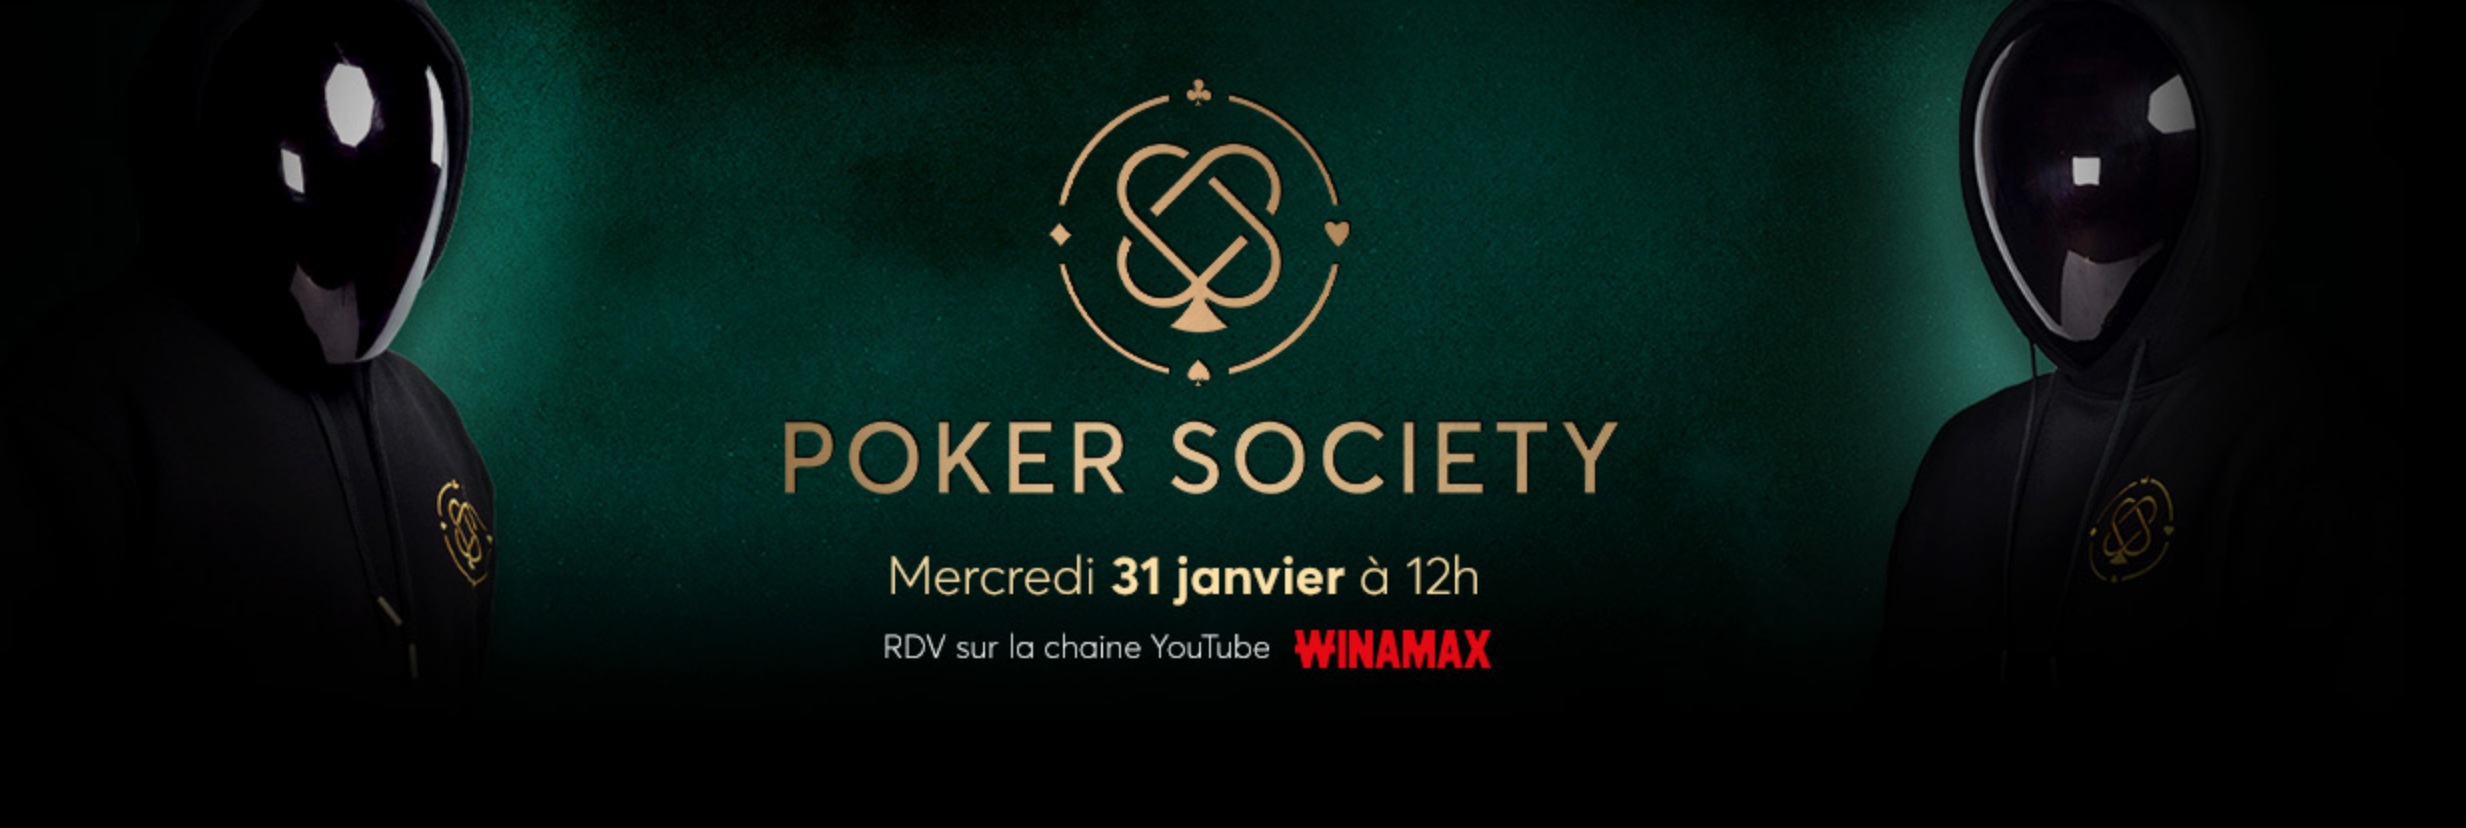 jeu poker society winamax youtube